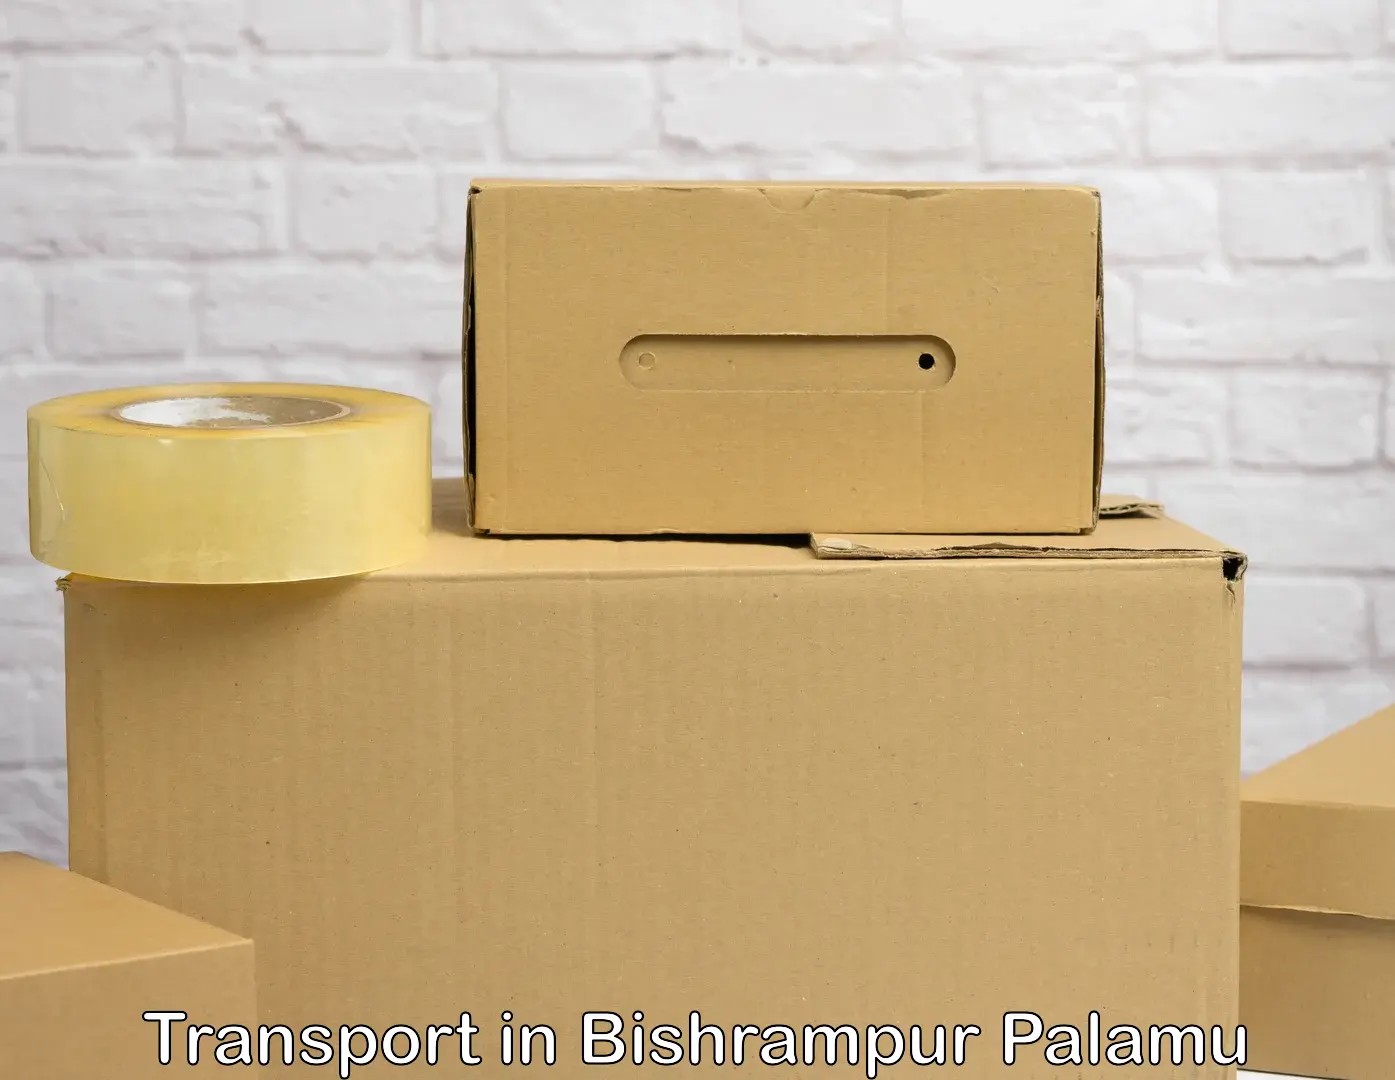 Interstate goods transport in Bishrampur Palamu